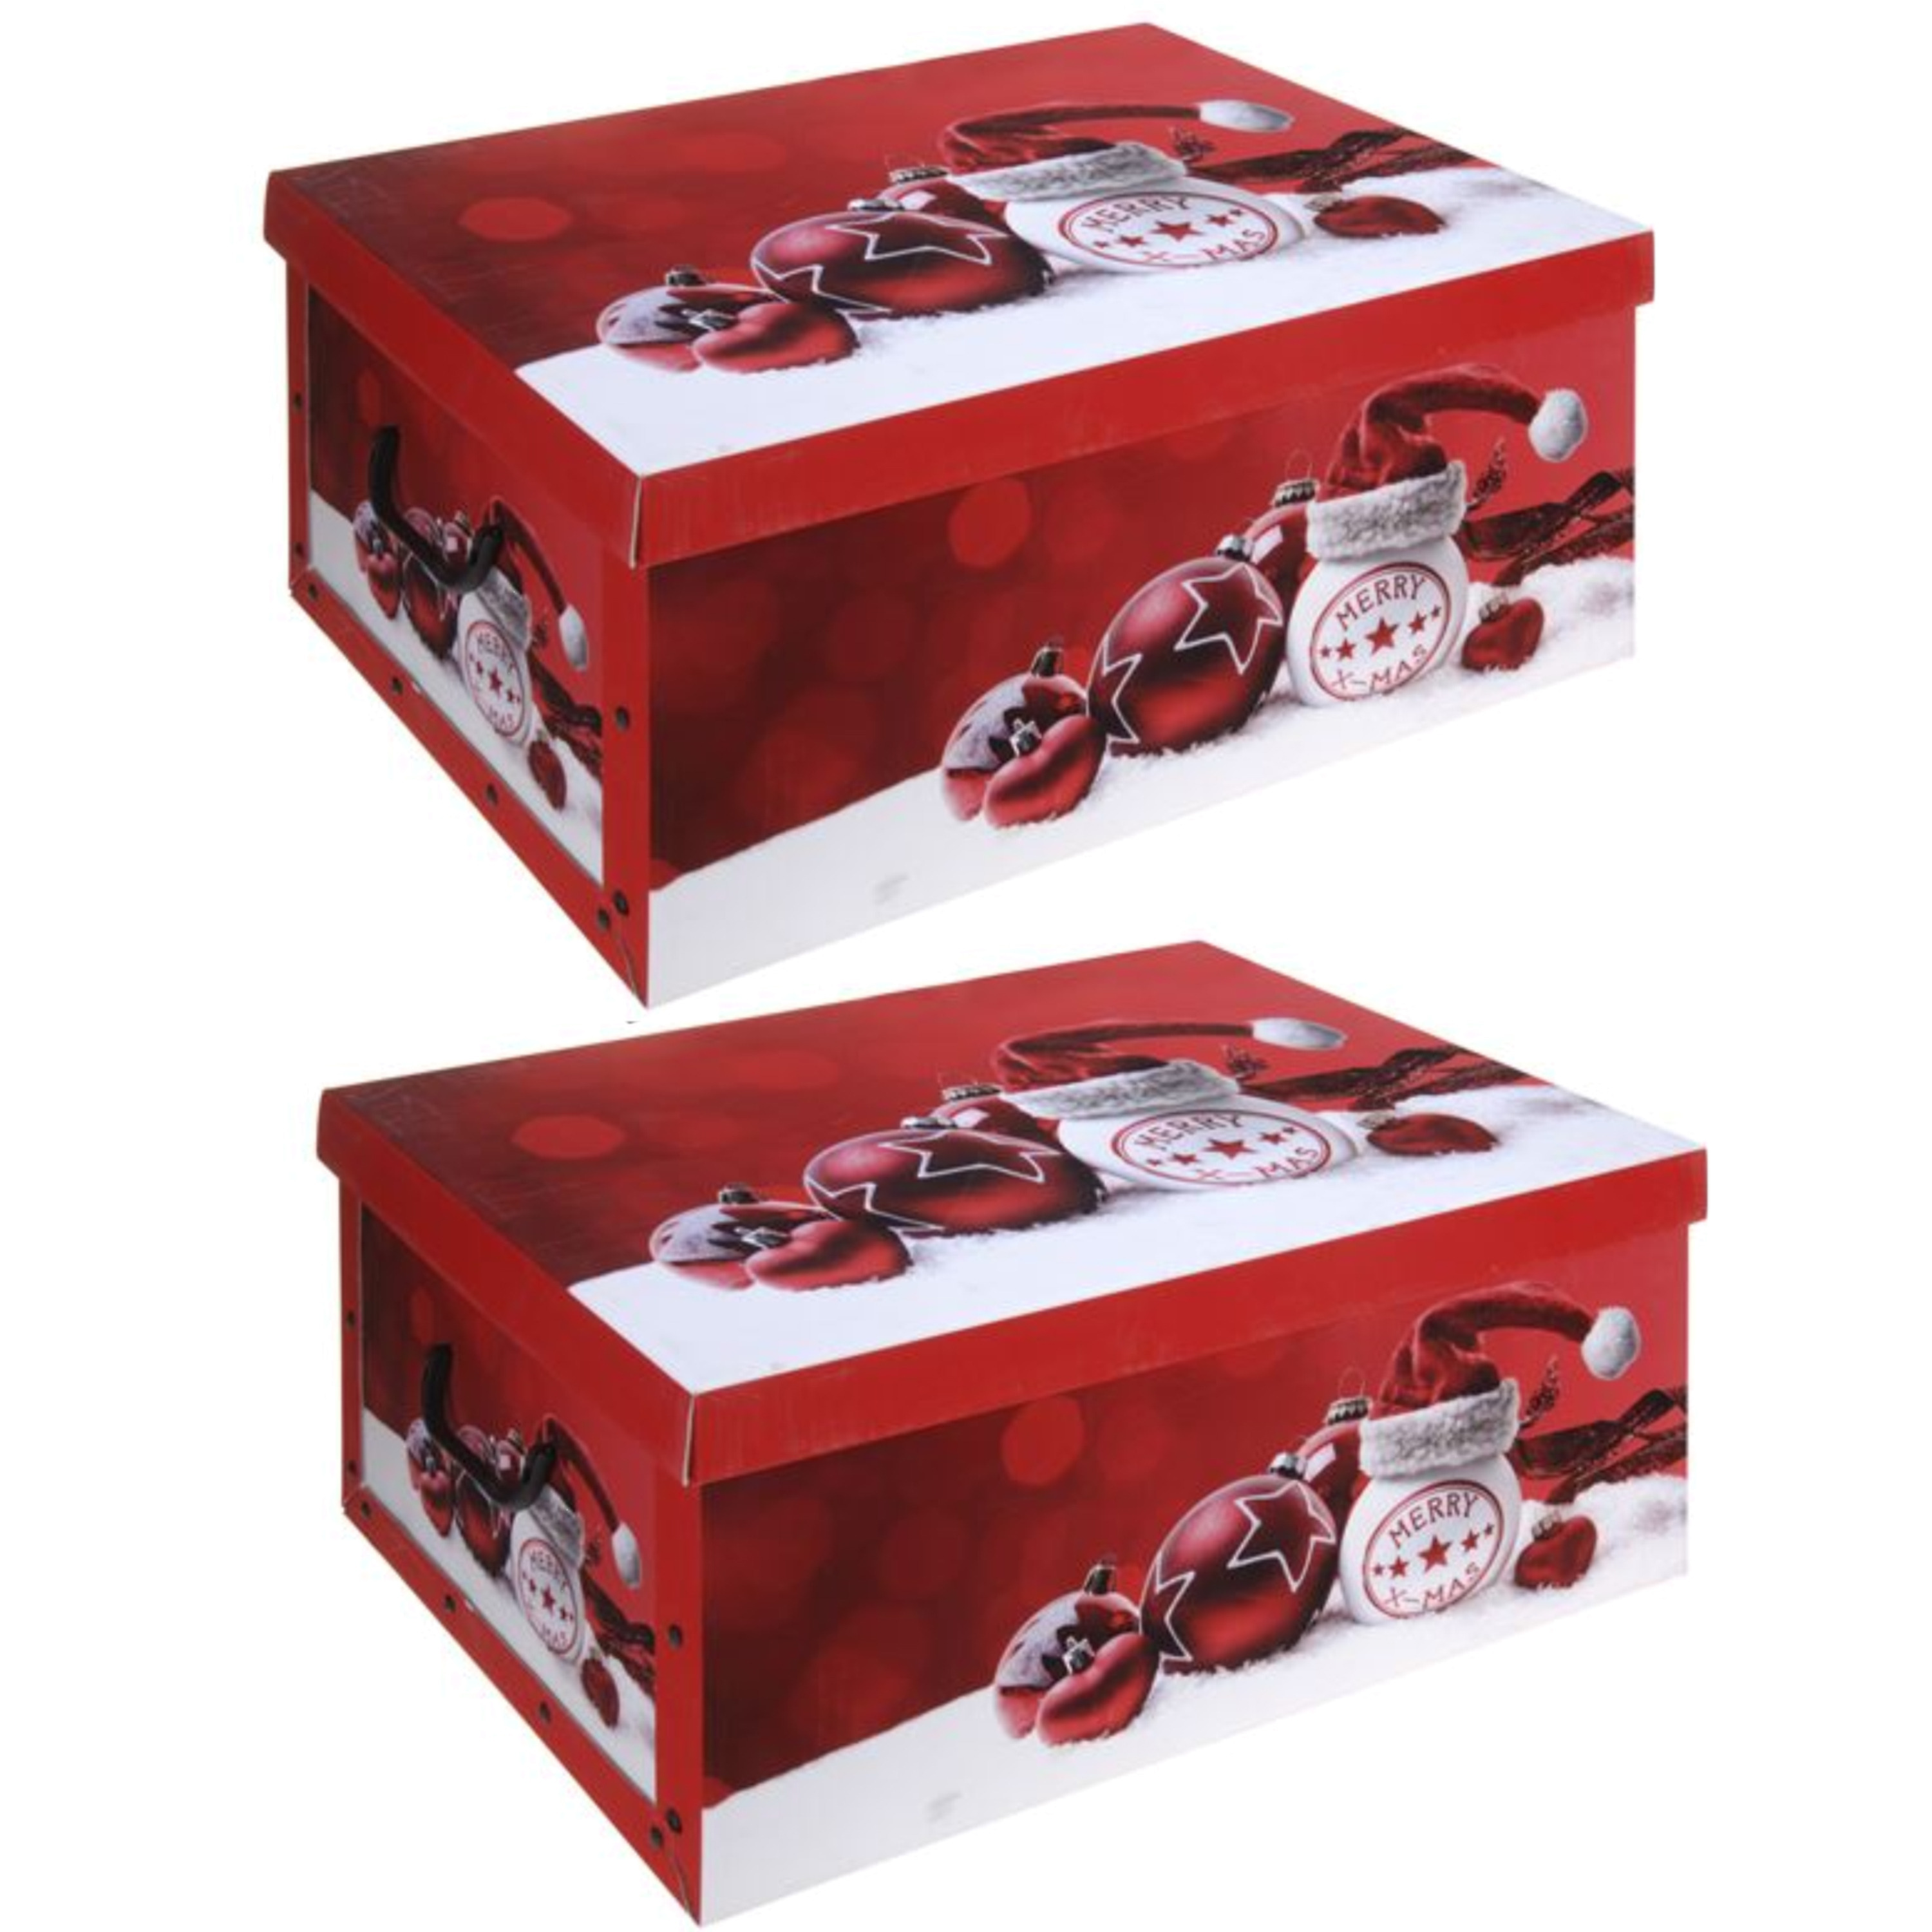 Pakket van 2x stuks rode kerstballen-kerstversiering opbergbox 51 cm